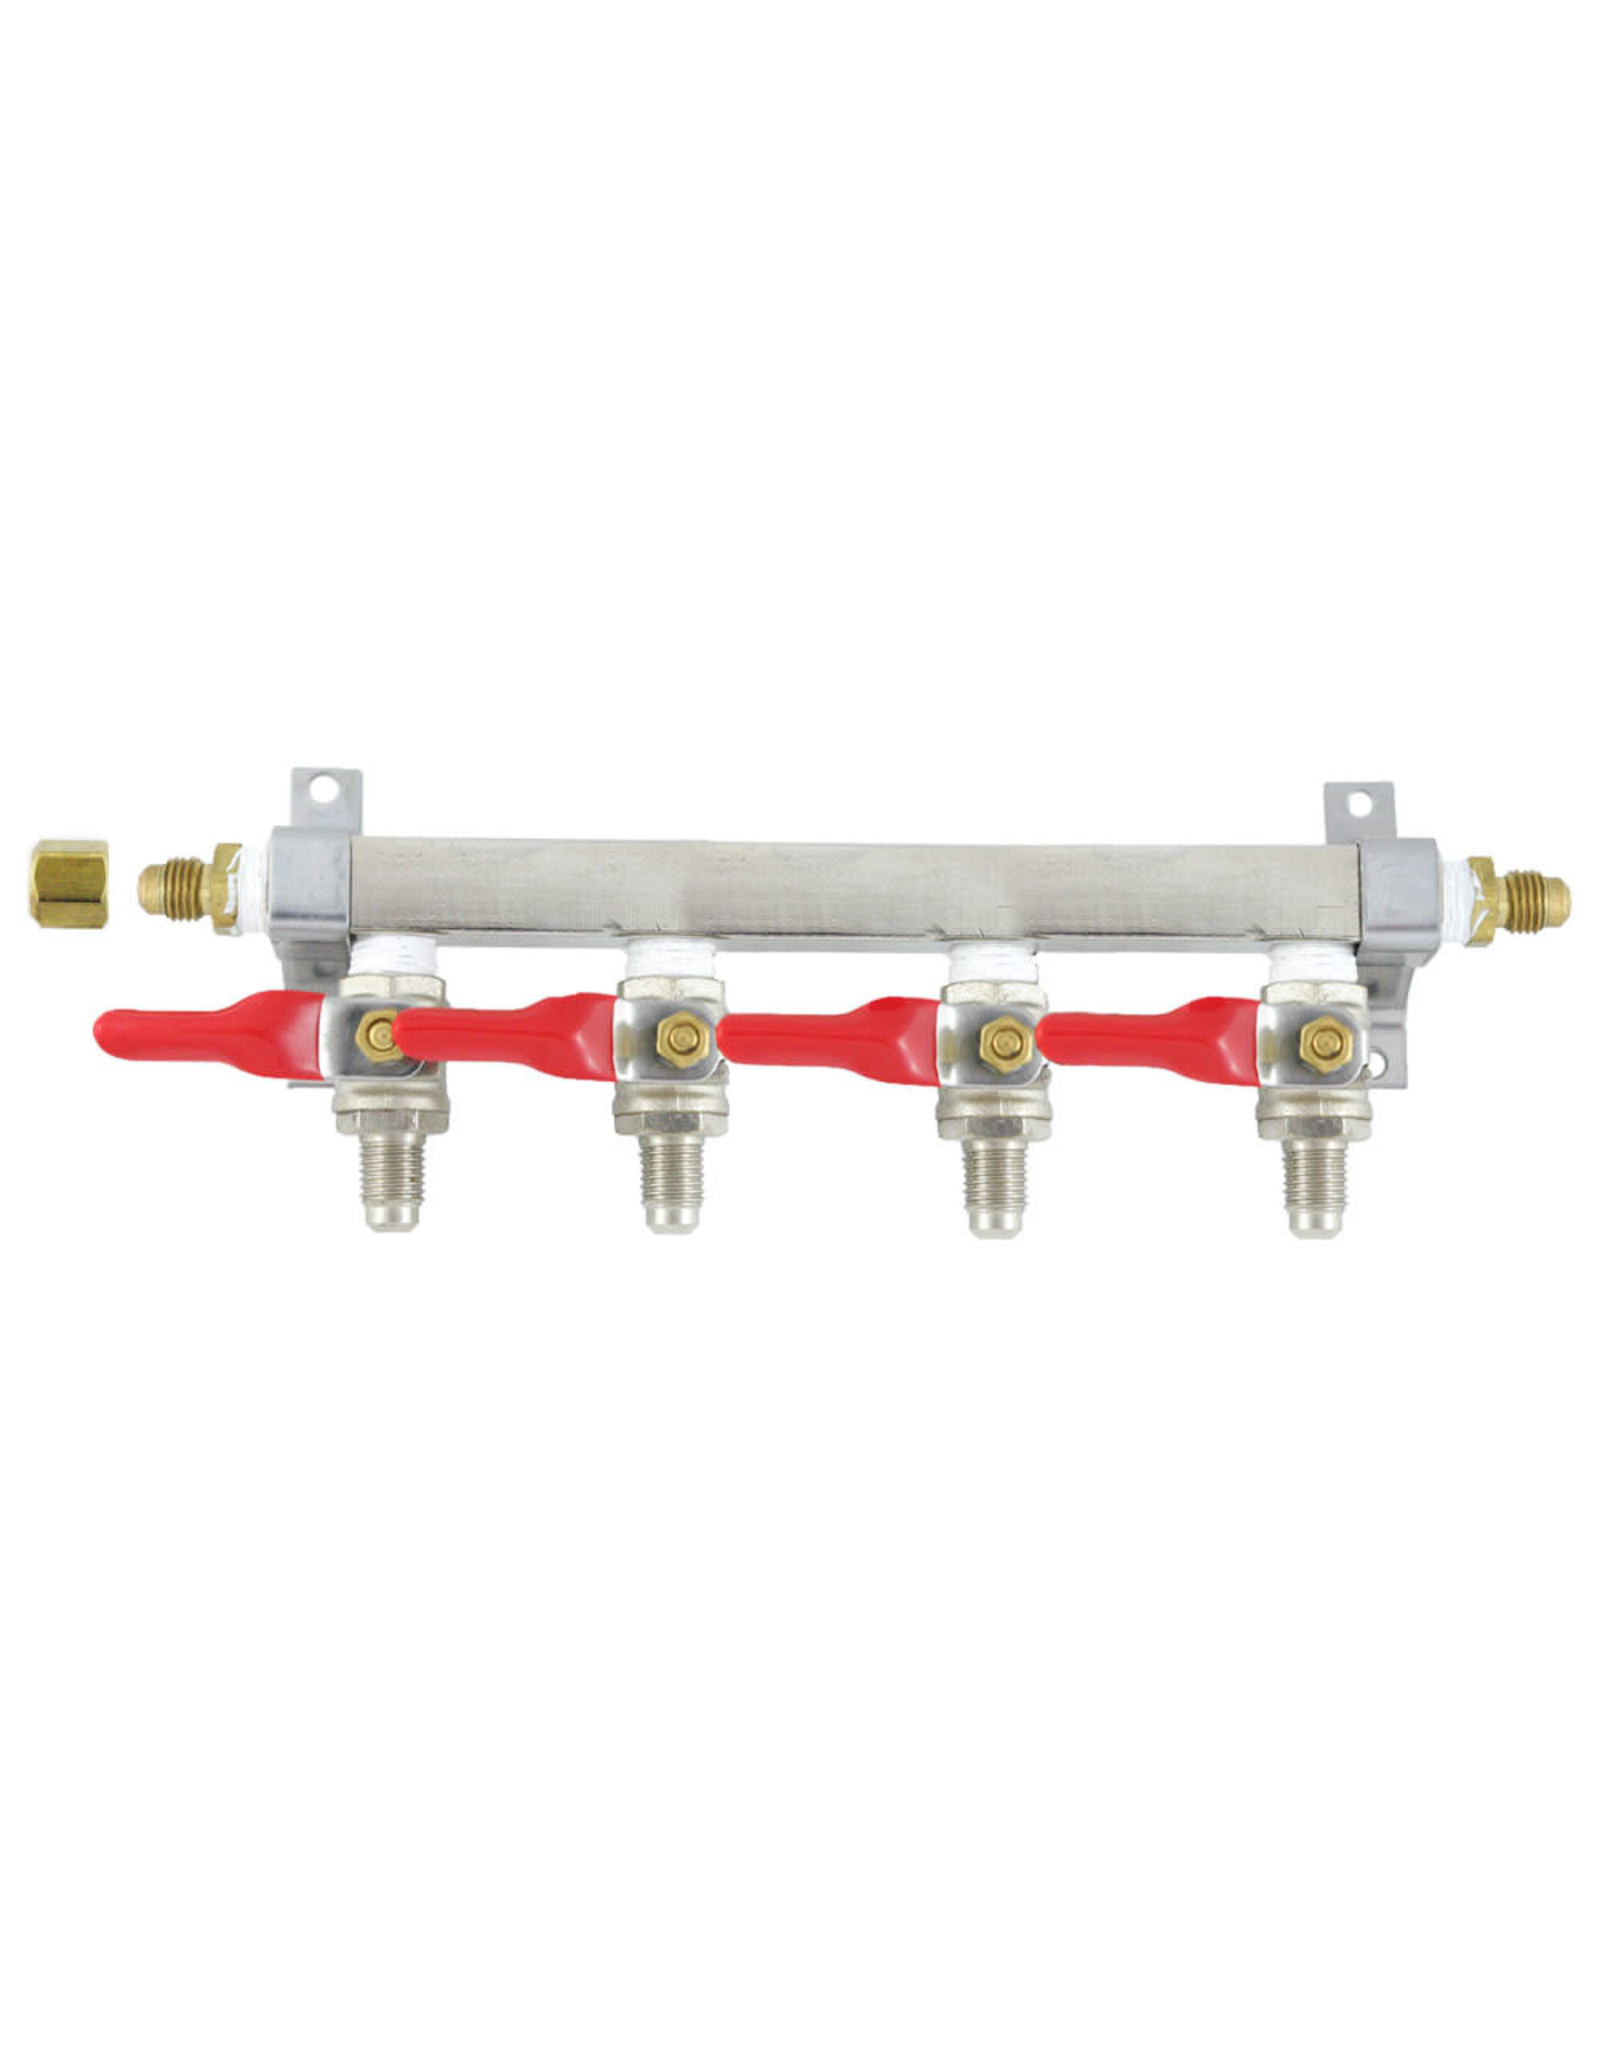 4 line Brass manifold 1/4" MFL CO2 distribution w/ check valve